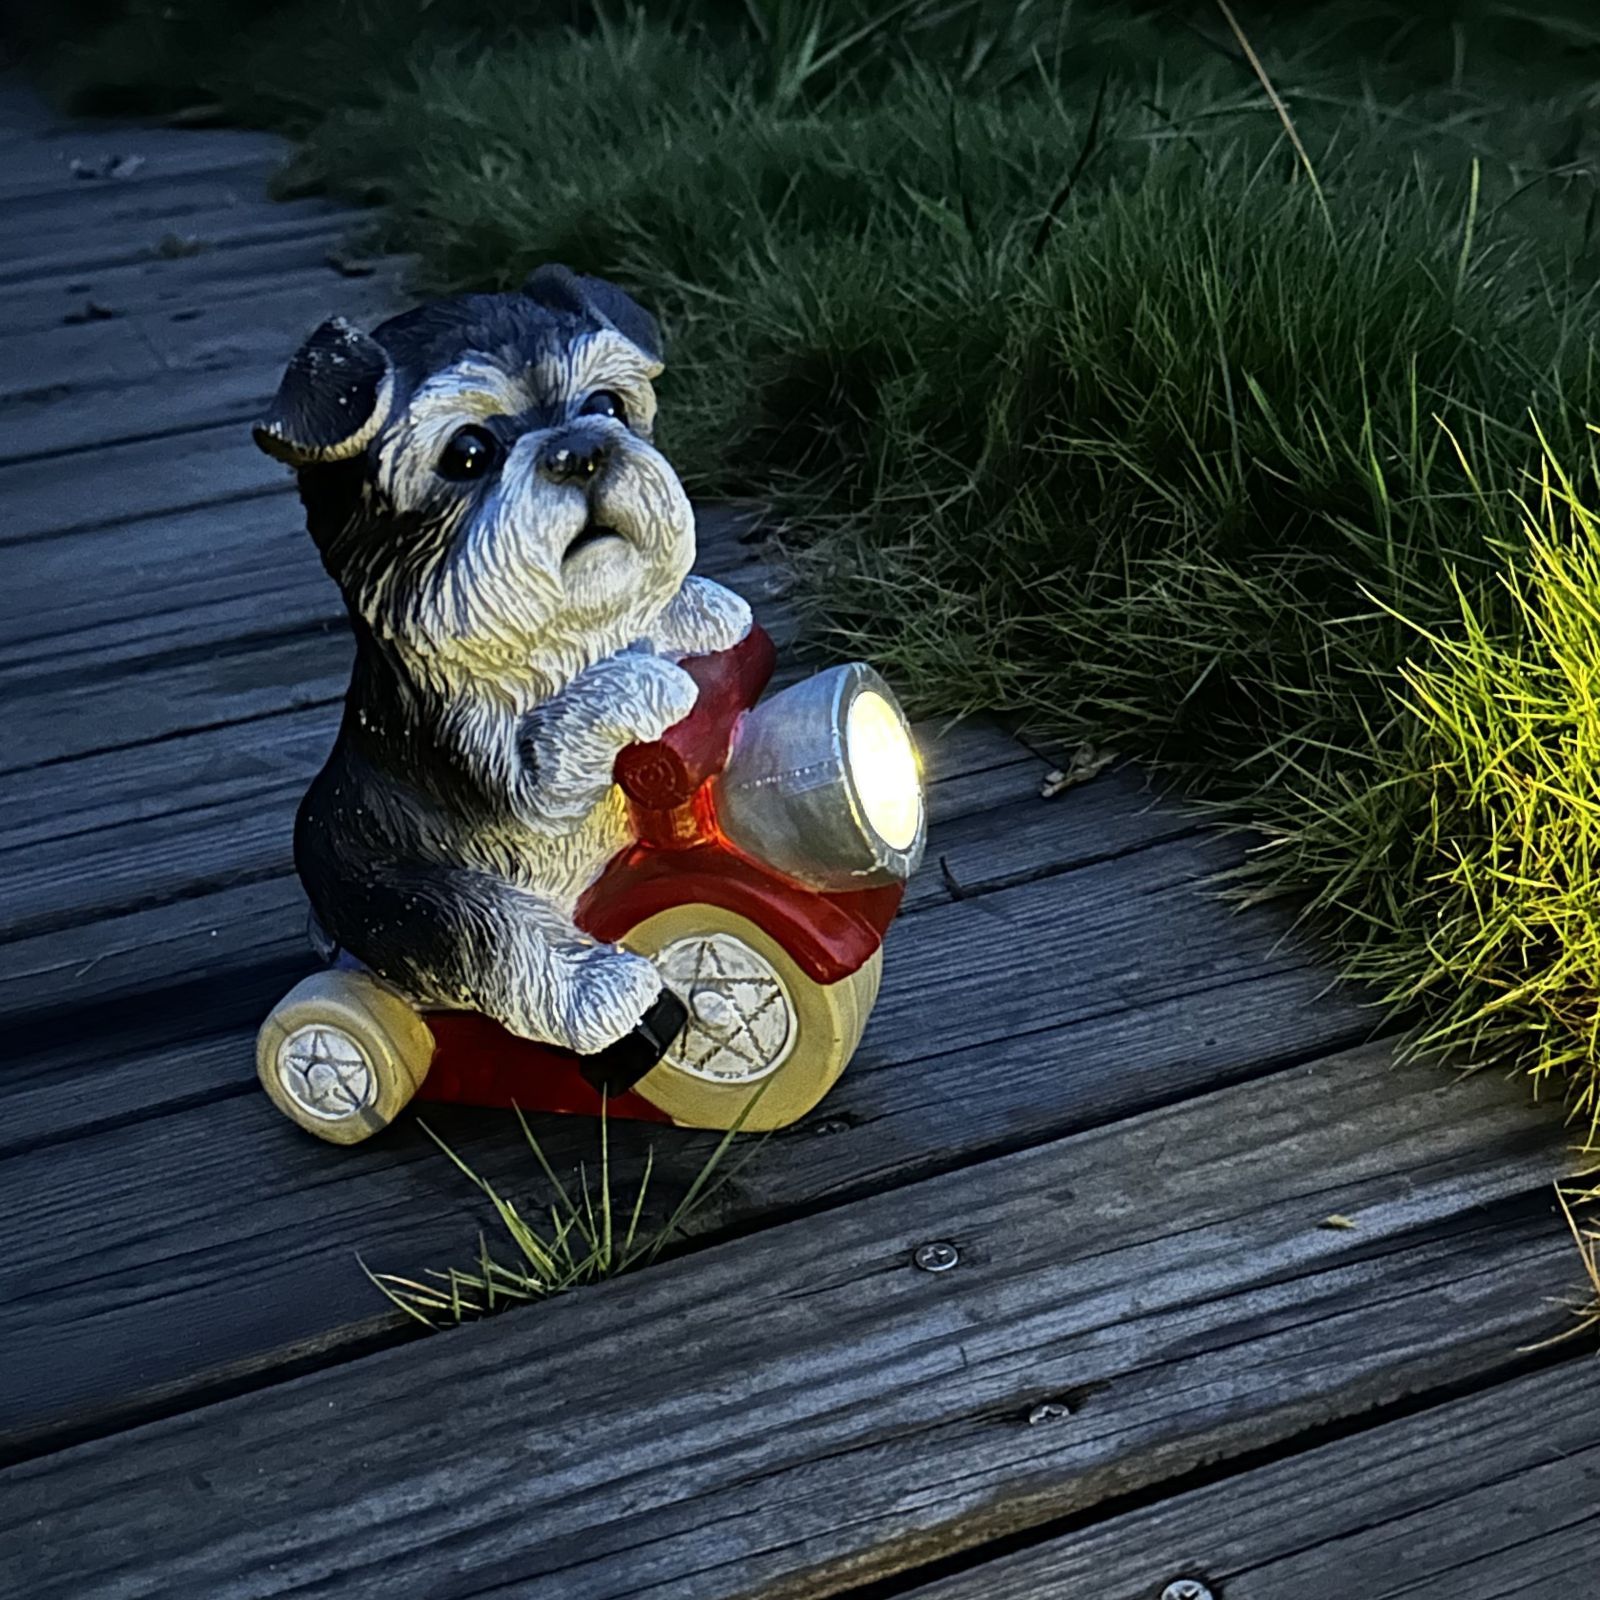 ソーラーライト ガーデンライト ガーデンオーナメント 犬 ドッグ 庭オブジェ 置物 癒しグッズ ガーデニング お庭 玄関ライト 動物の置物 花壇の置物  園芸装飾 - メルカリ